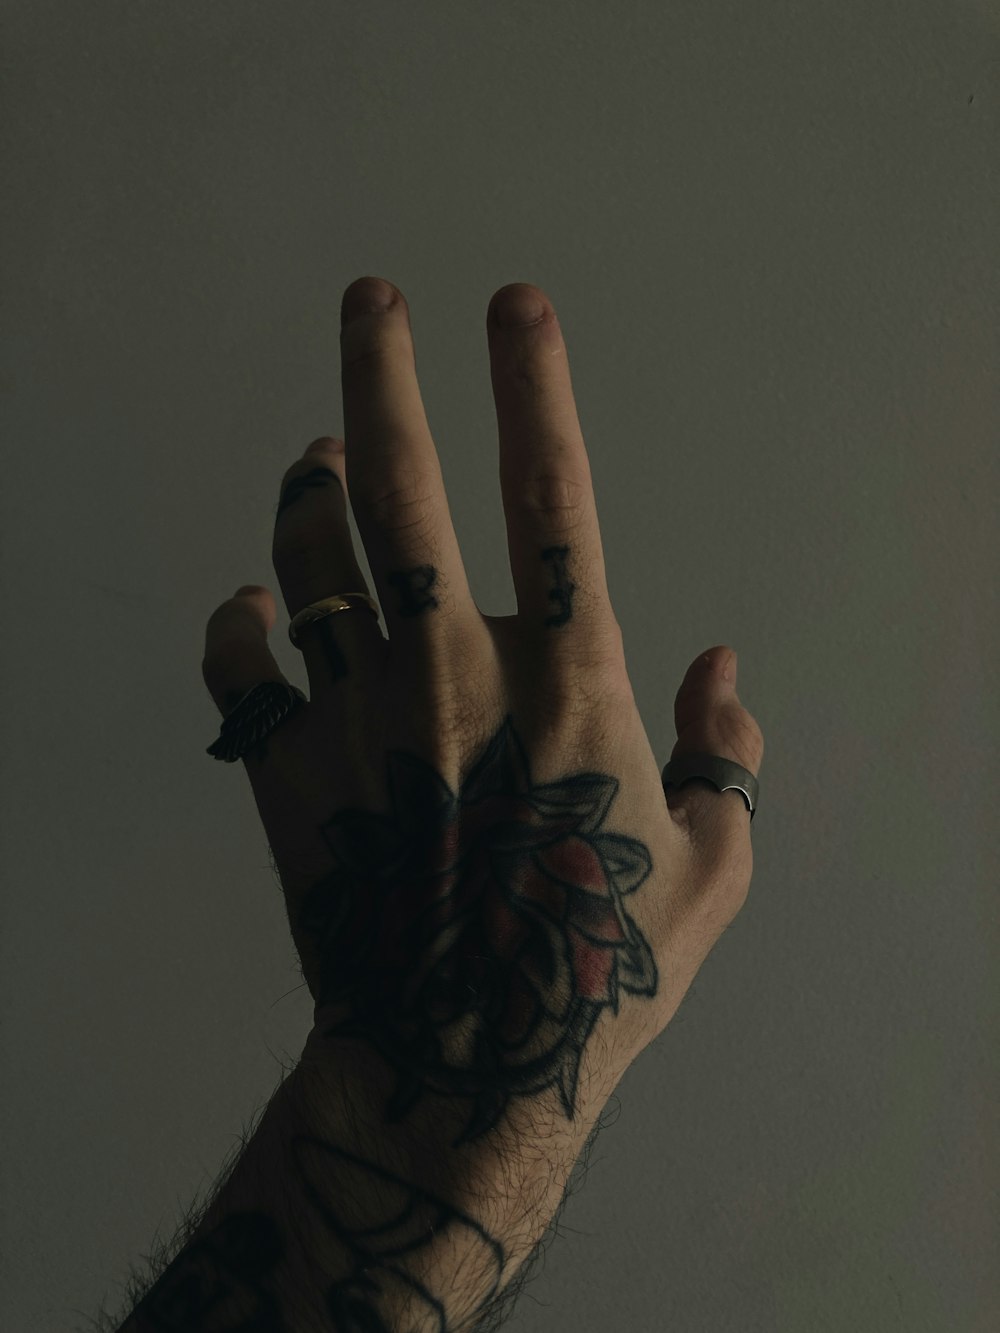 Uma mão com uma tatuagem